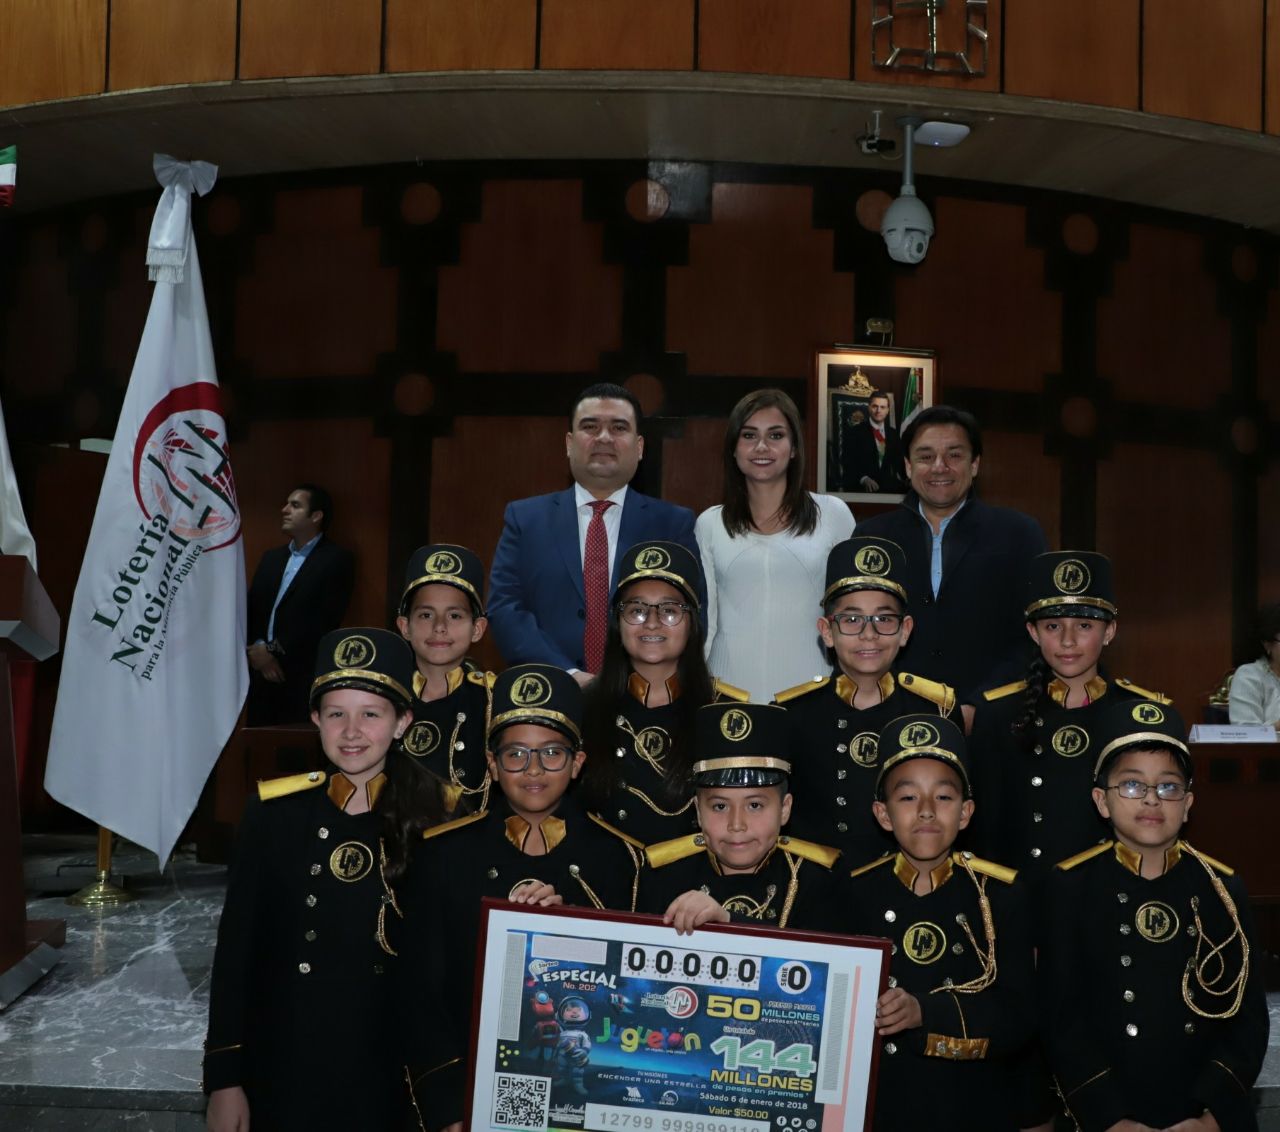 Fotografía grupal de Roberto Saldaña Esteban Macías y Mariana Iparrea acompañados de 9 niños gritones de Lorería Nacional